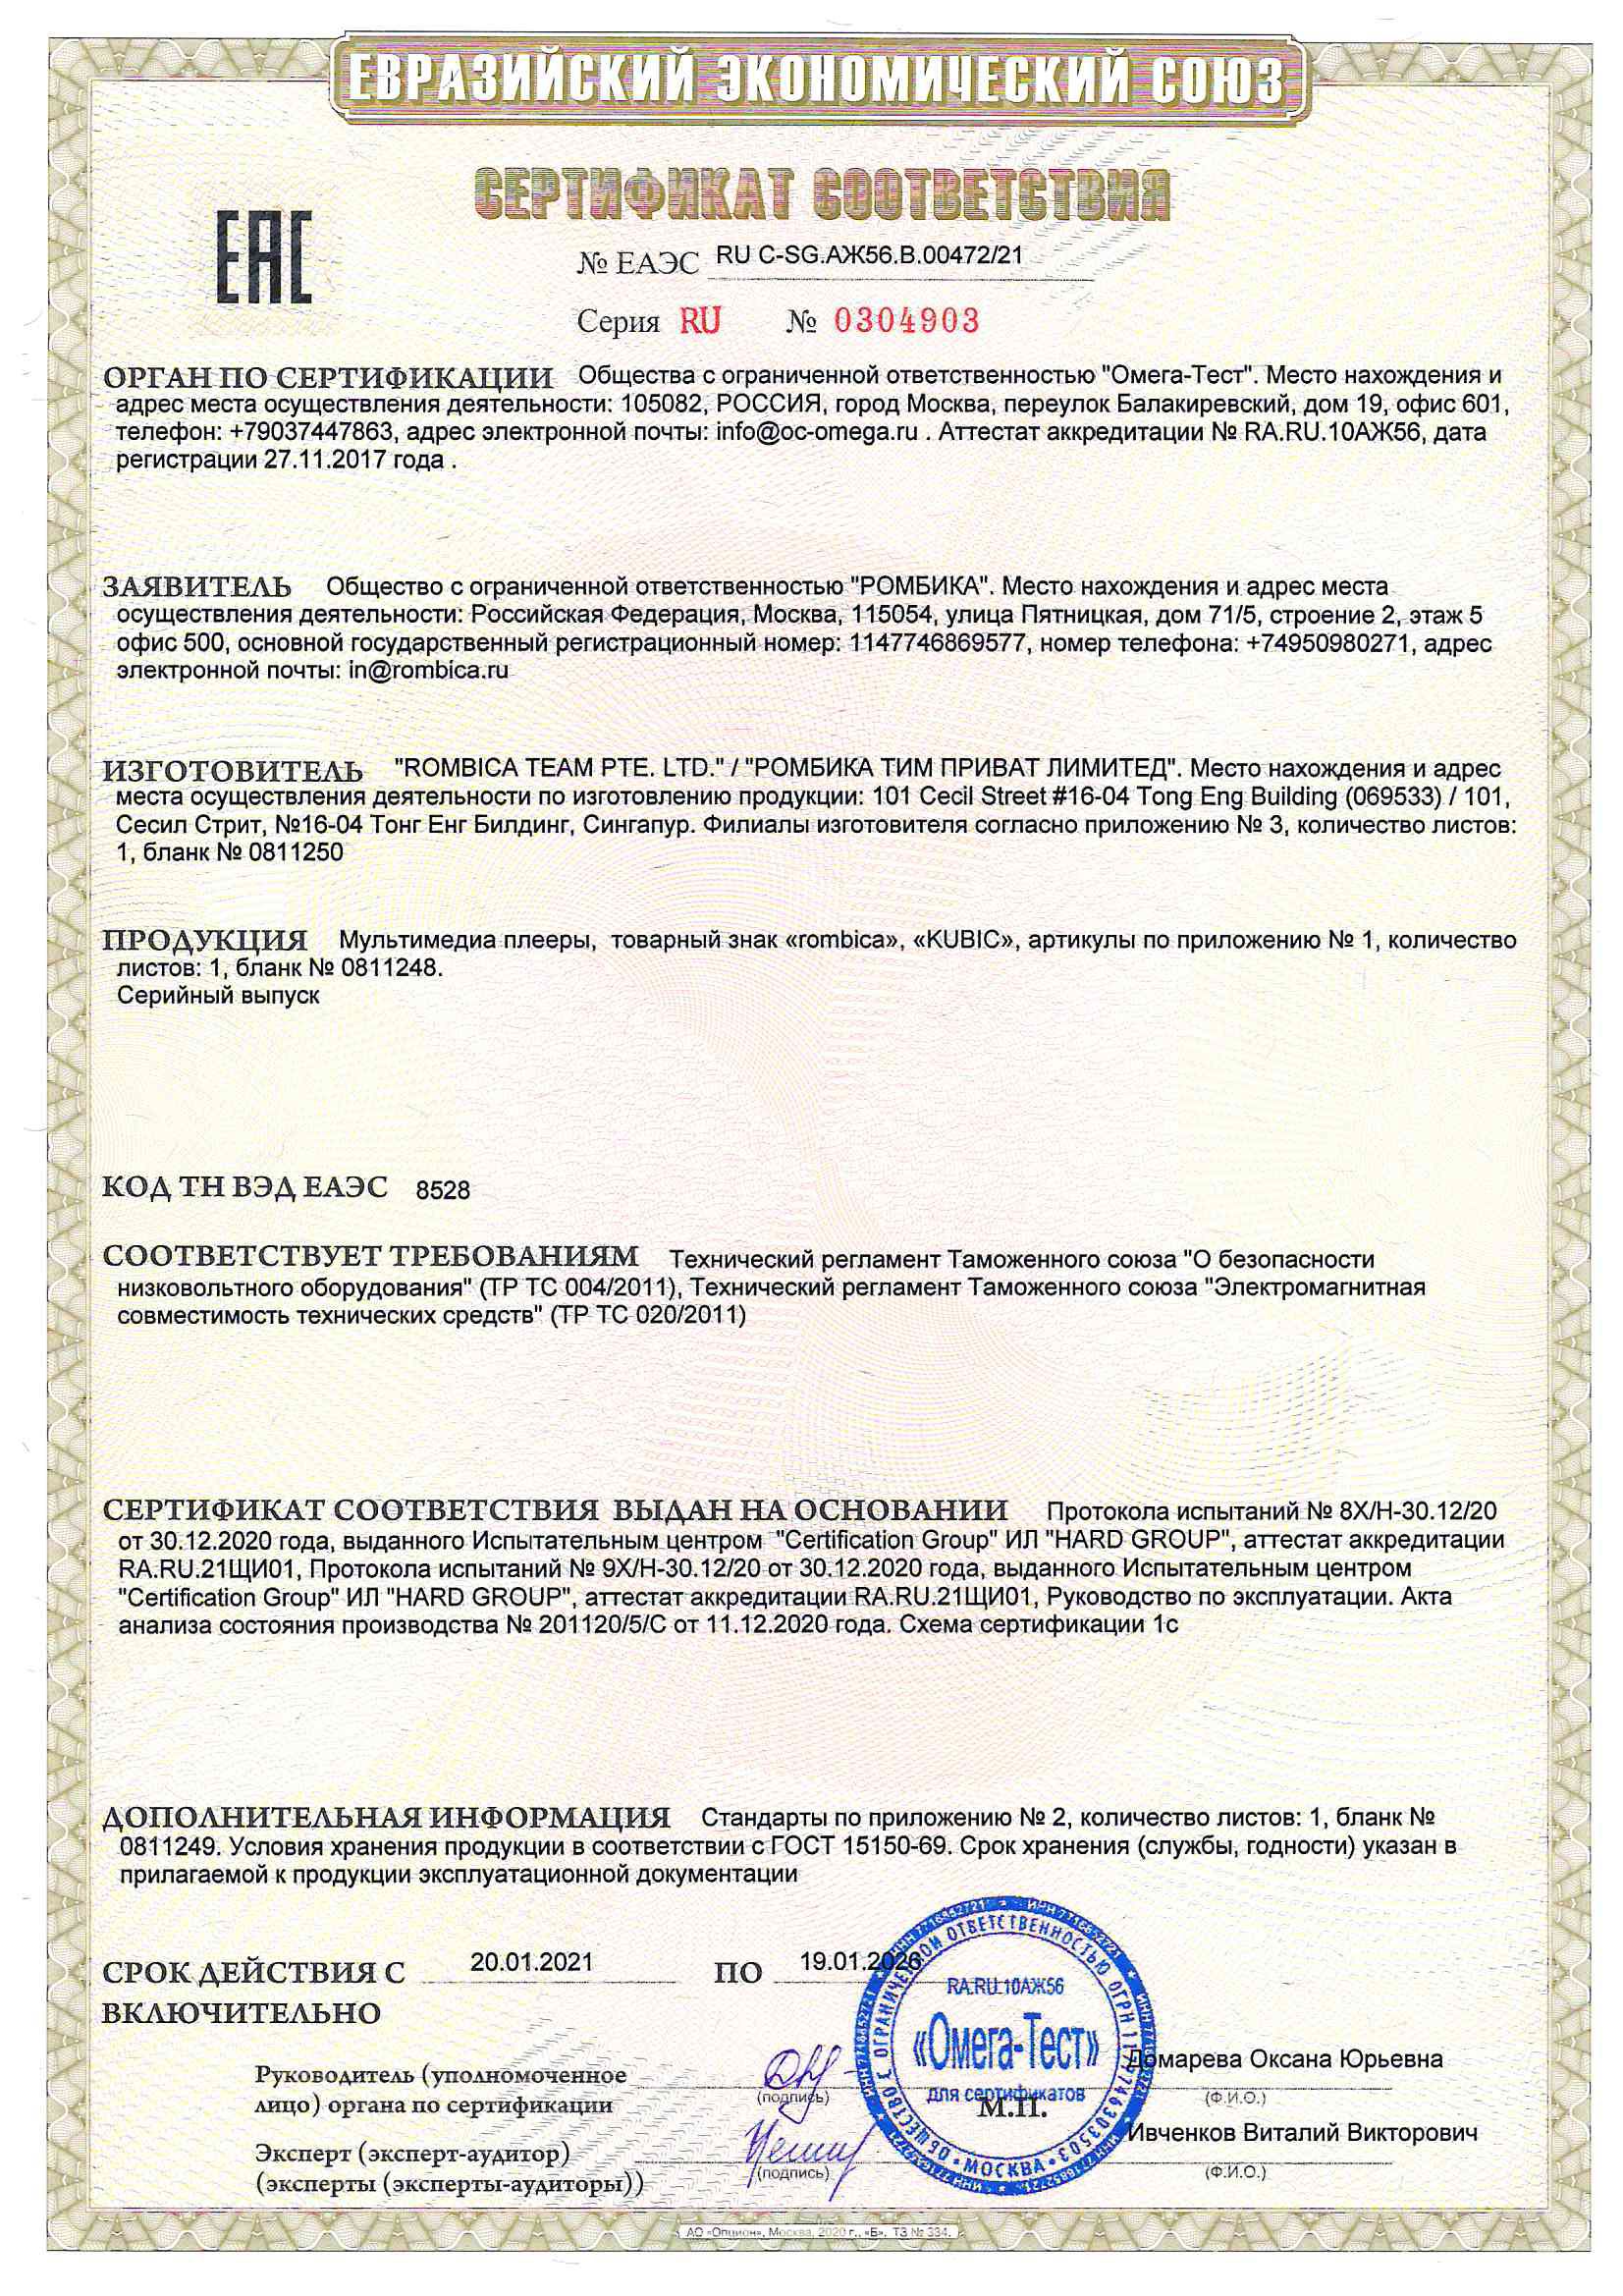 Сертификат соответствия качества морепродукты